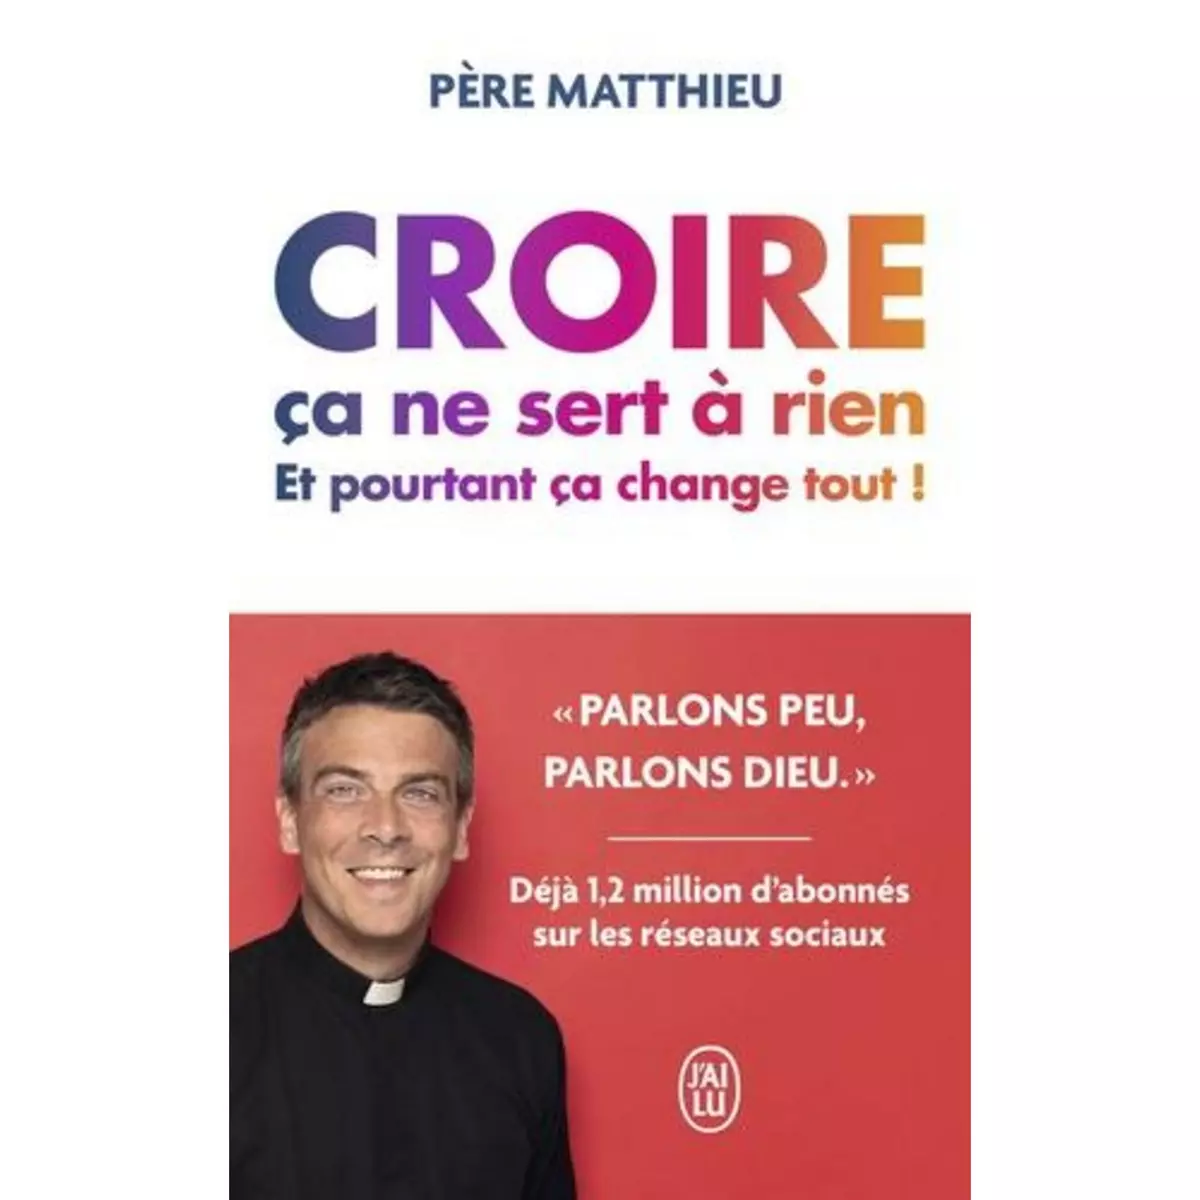  CROIRE CA NE SERT A RIEN. ET POURTANT, CA CHANGE TOUT !, Père Matthieu